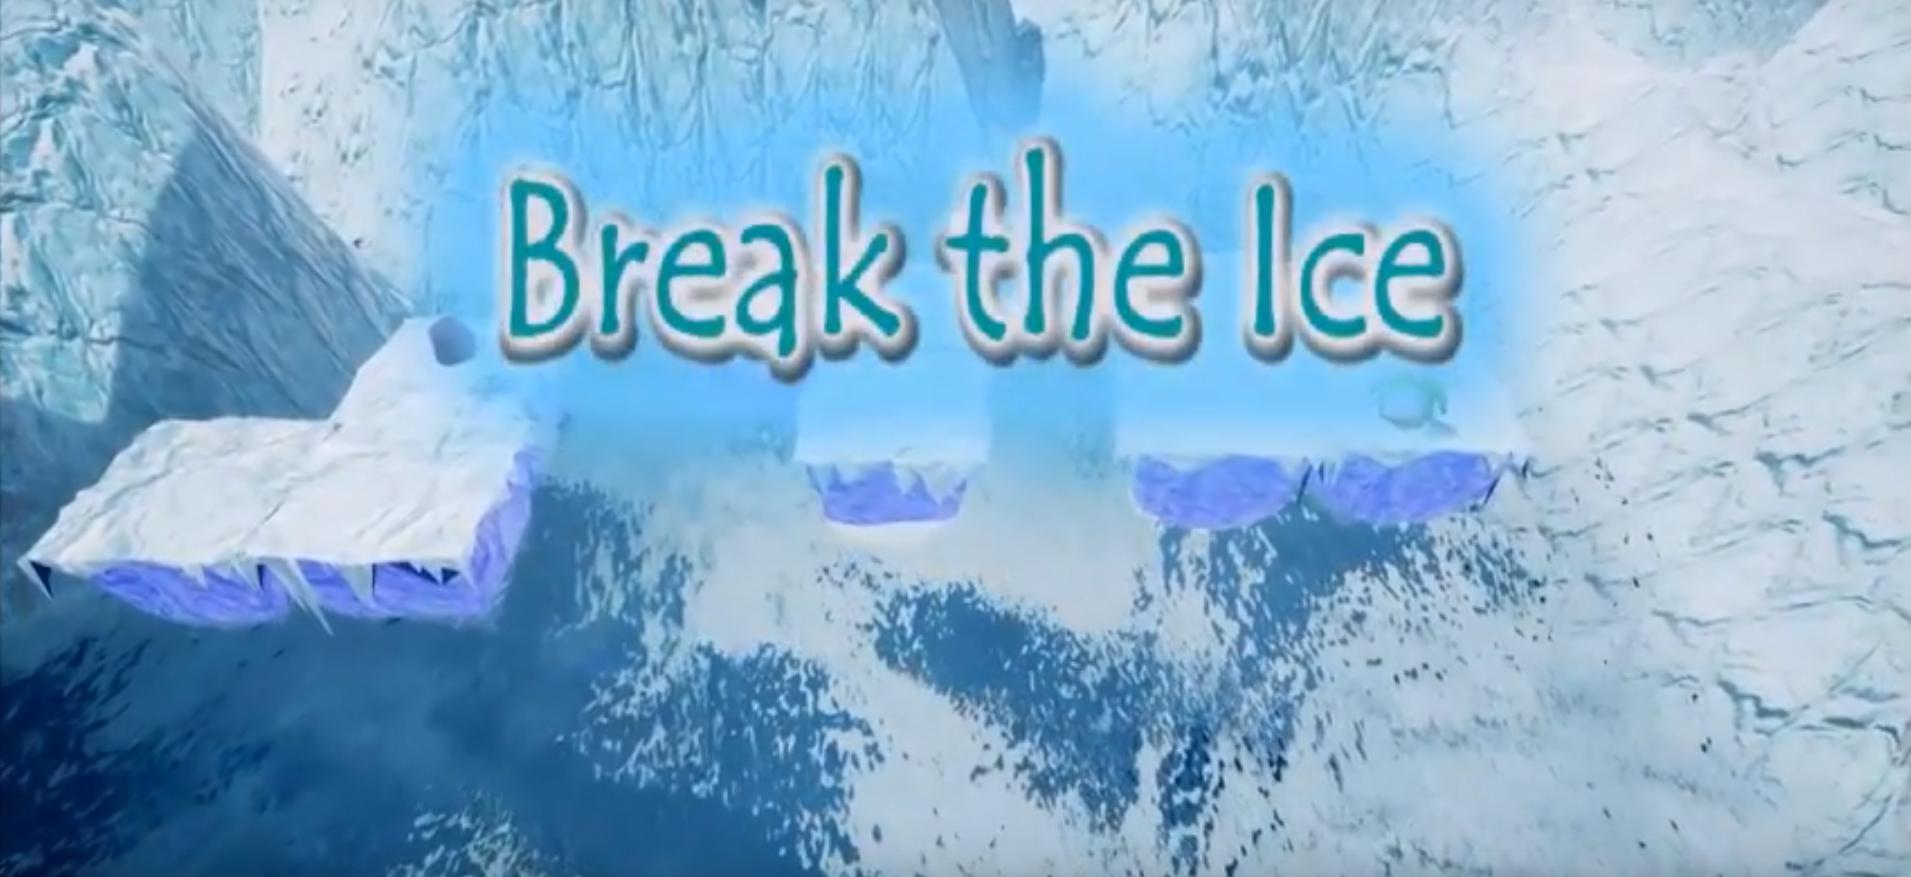 To break the ice. Break the Ice. Break the Ice Spotlight 8. Breaking the Ice. Breaking the Ice Spotlight 8 презентация.